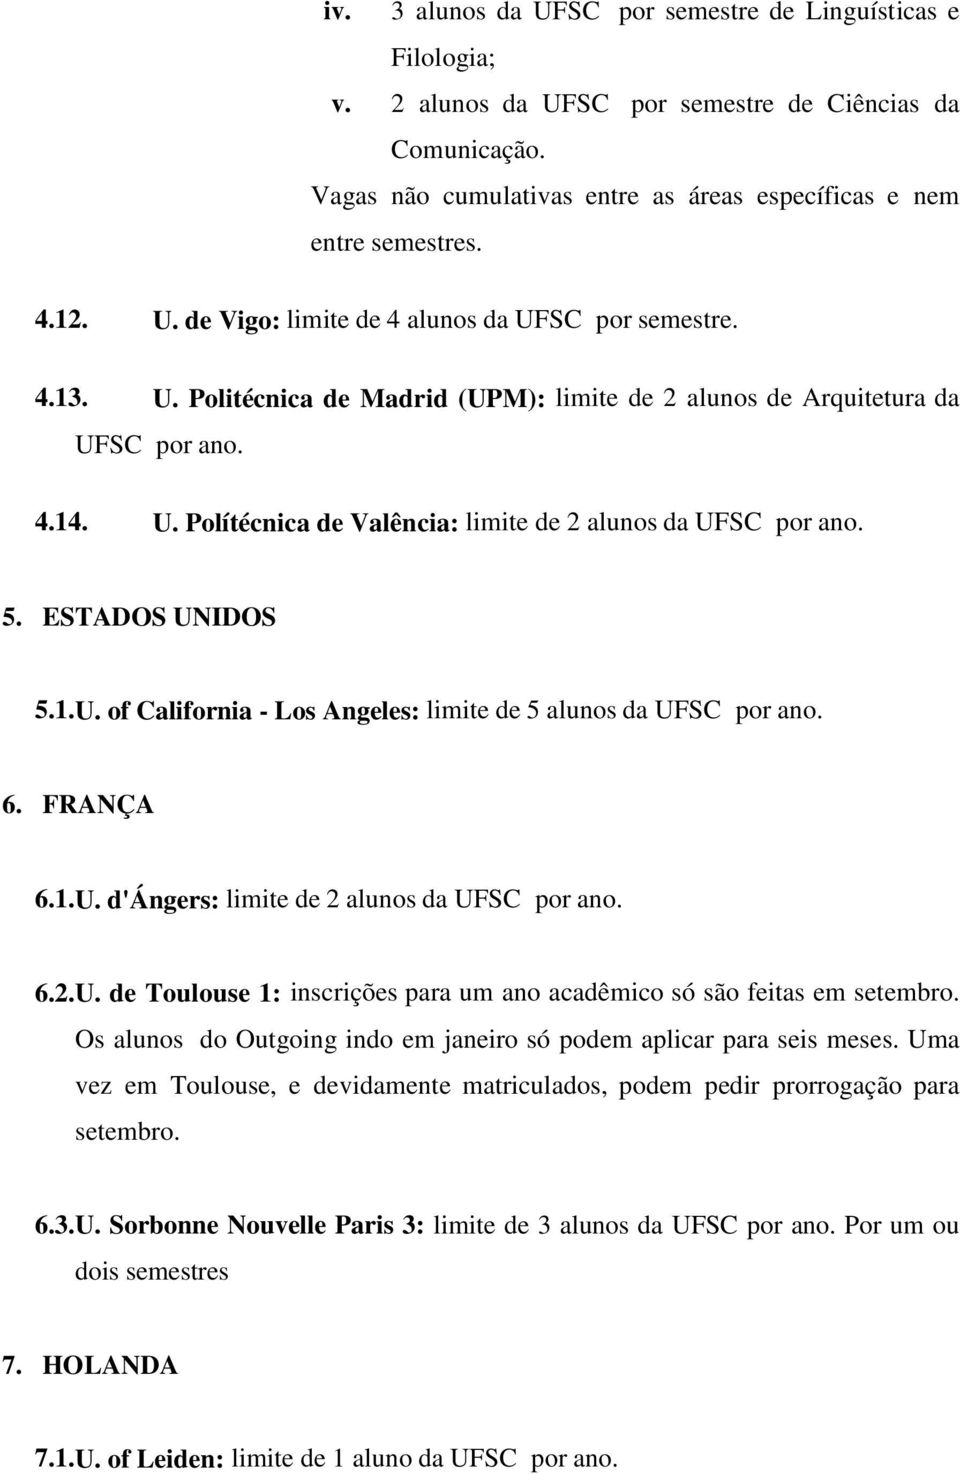 5. ESTADOS UNIDOS 5.1.U. of California - Los Angeles: limite de 5 alunos da UFSC por ano. 6. FRANÇA 6.1.U. d'ángers: limite de 2 alunos da UFSC por ano. 6.2.U. de Toulouse 1: inscrições para um ano acadêmico só são feitas em setembro.